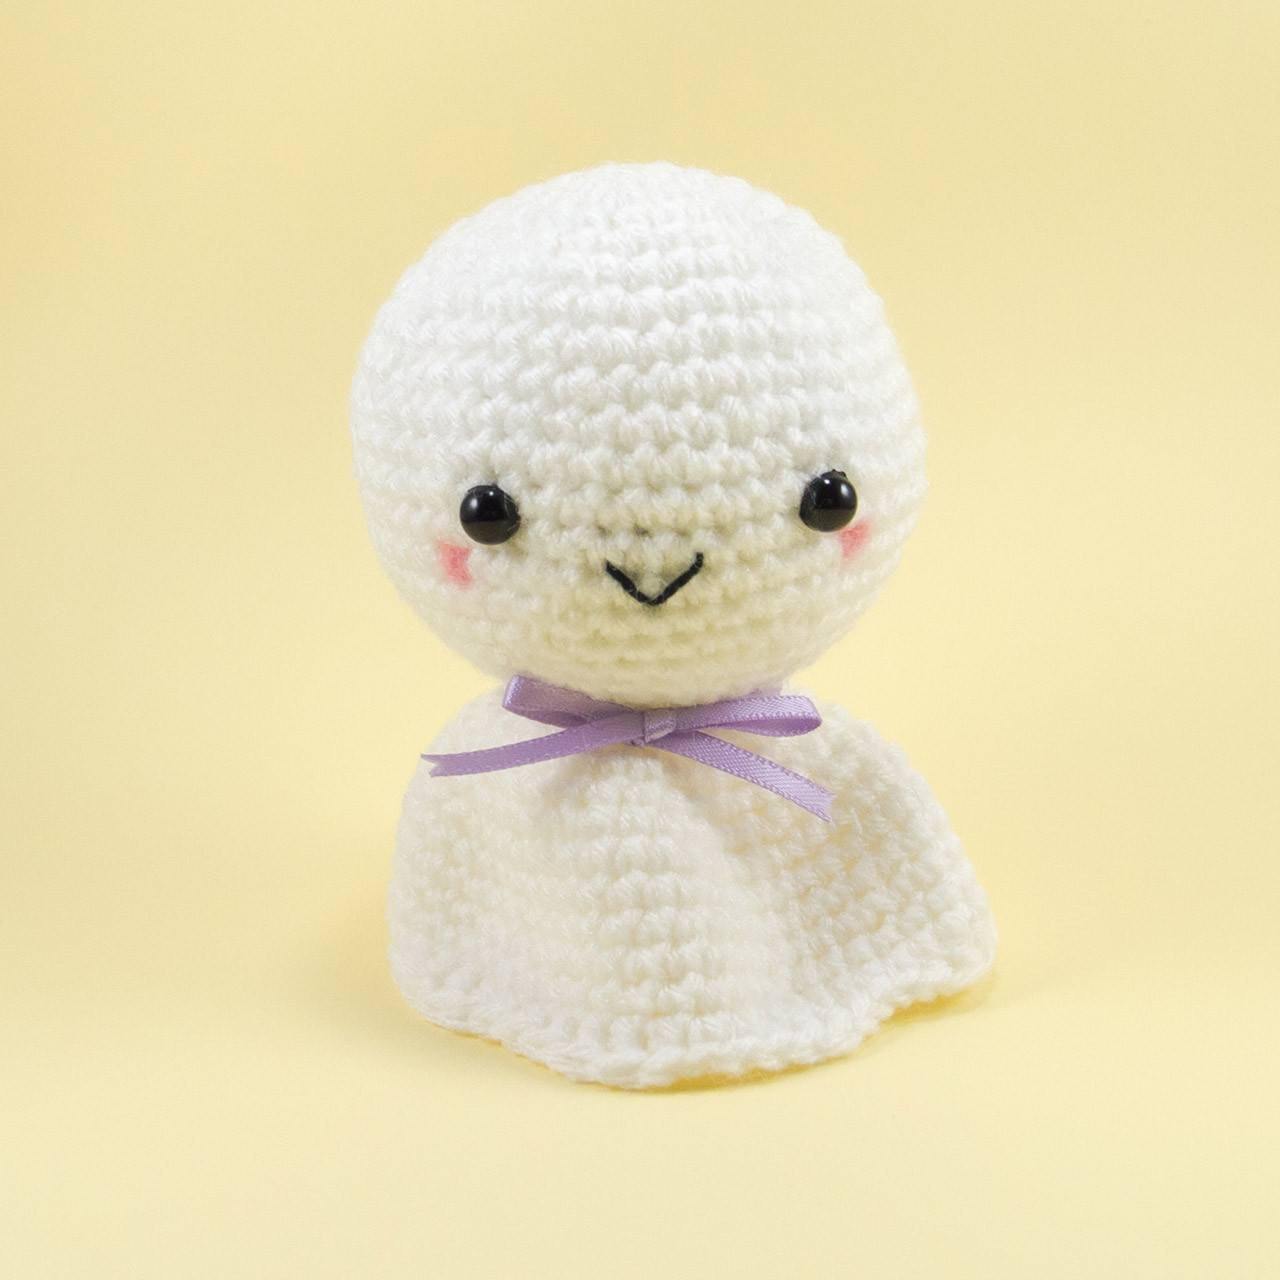 Japanese Weather Doll Crochet Pattern for Handmade Gift